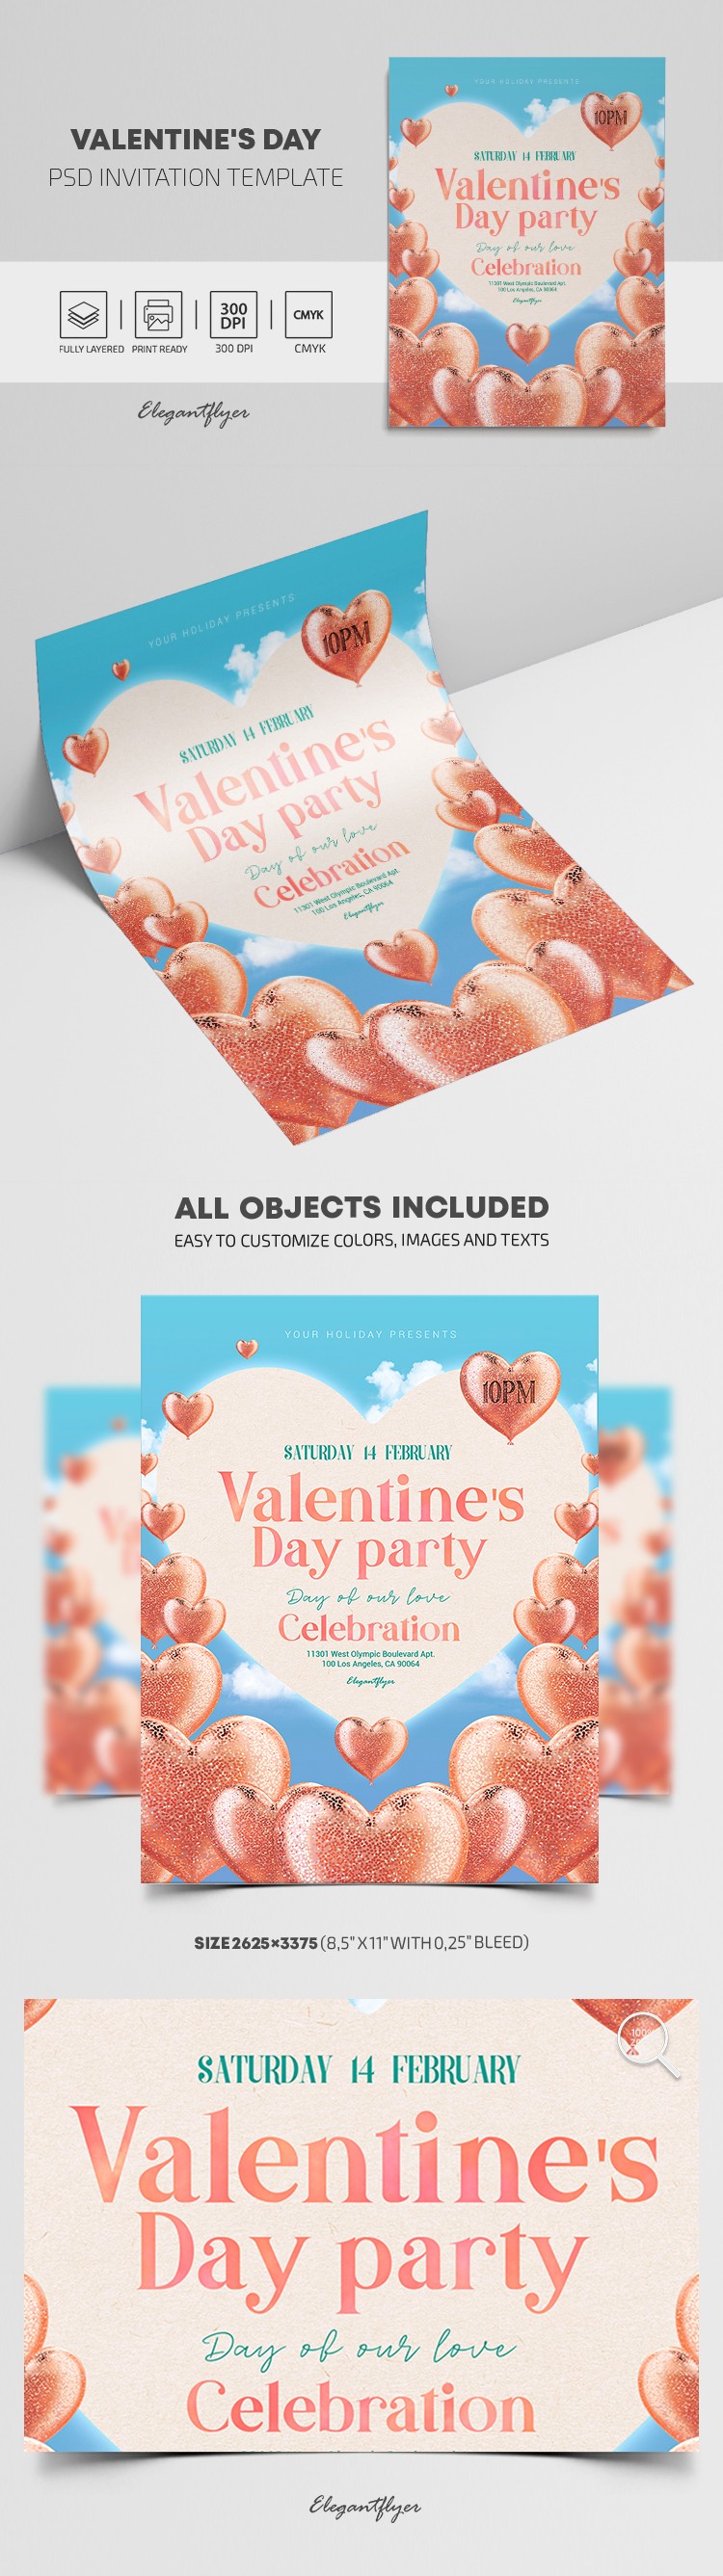 Valentine's Day Invitation by ElegantFlyer